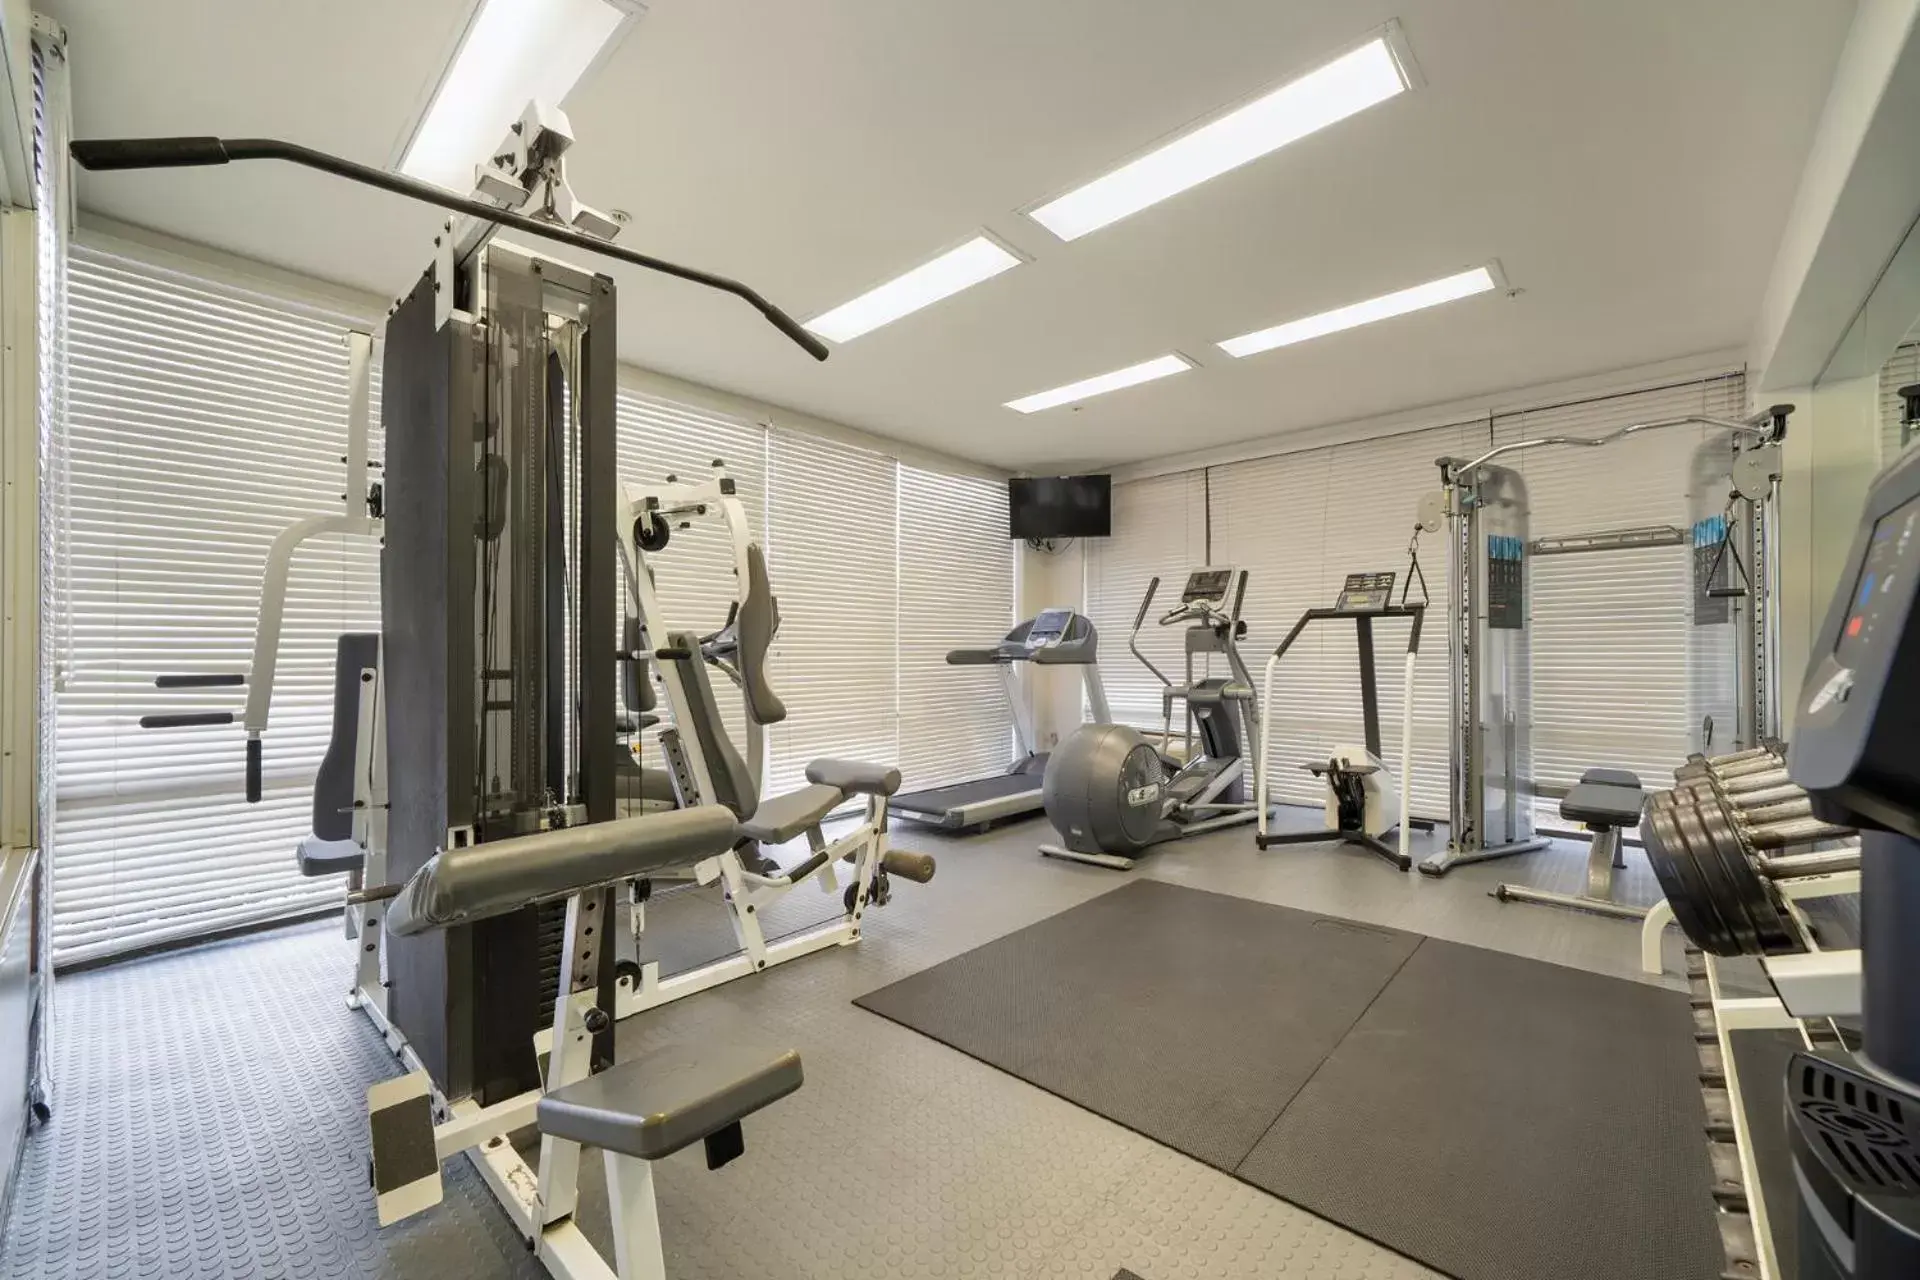 Fitness centre/facilities, Fitness Center/Facilities in Casablanca Inn